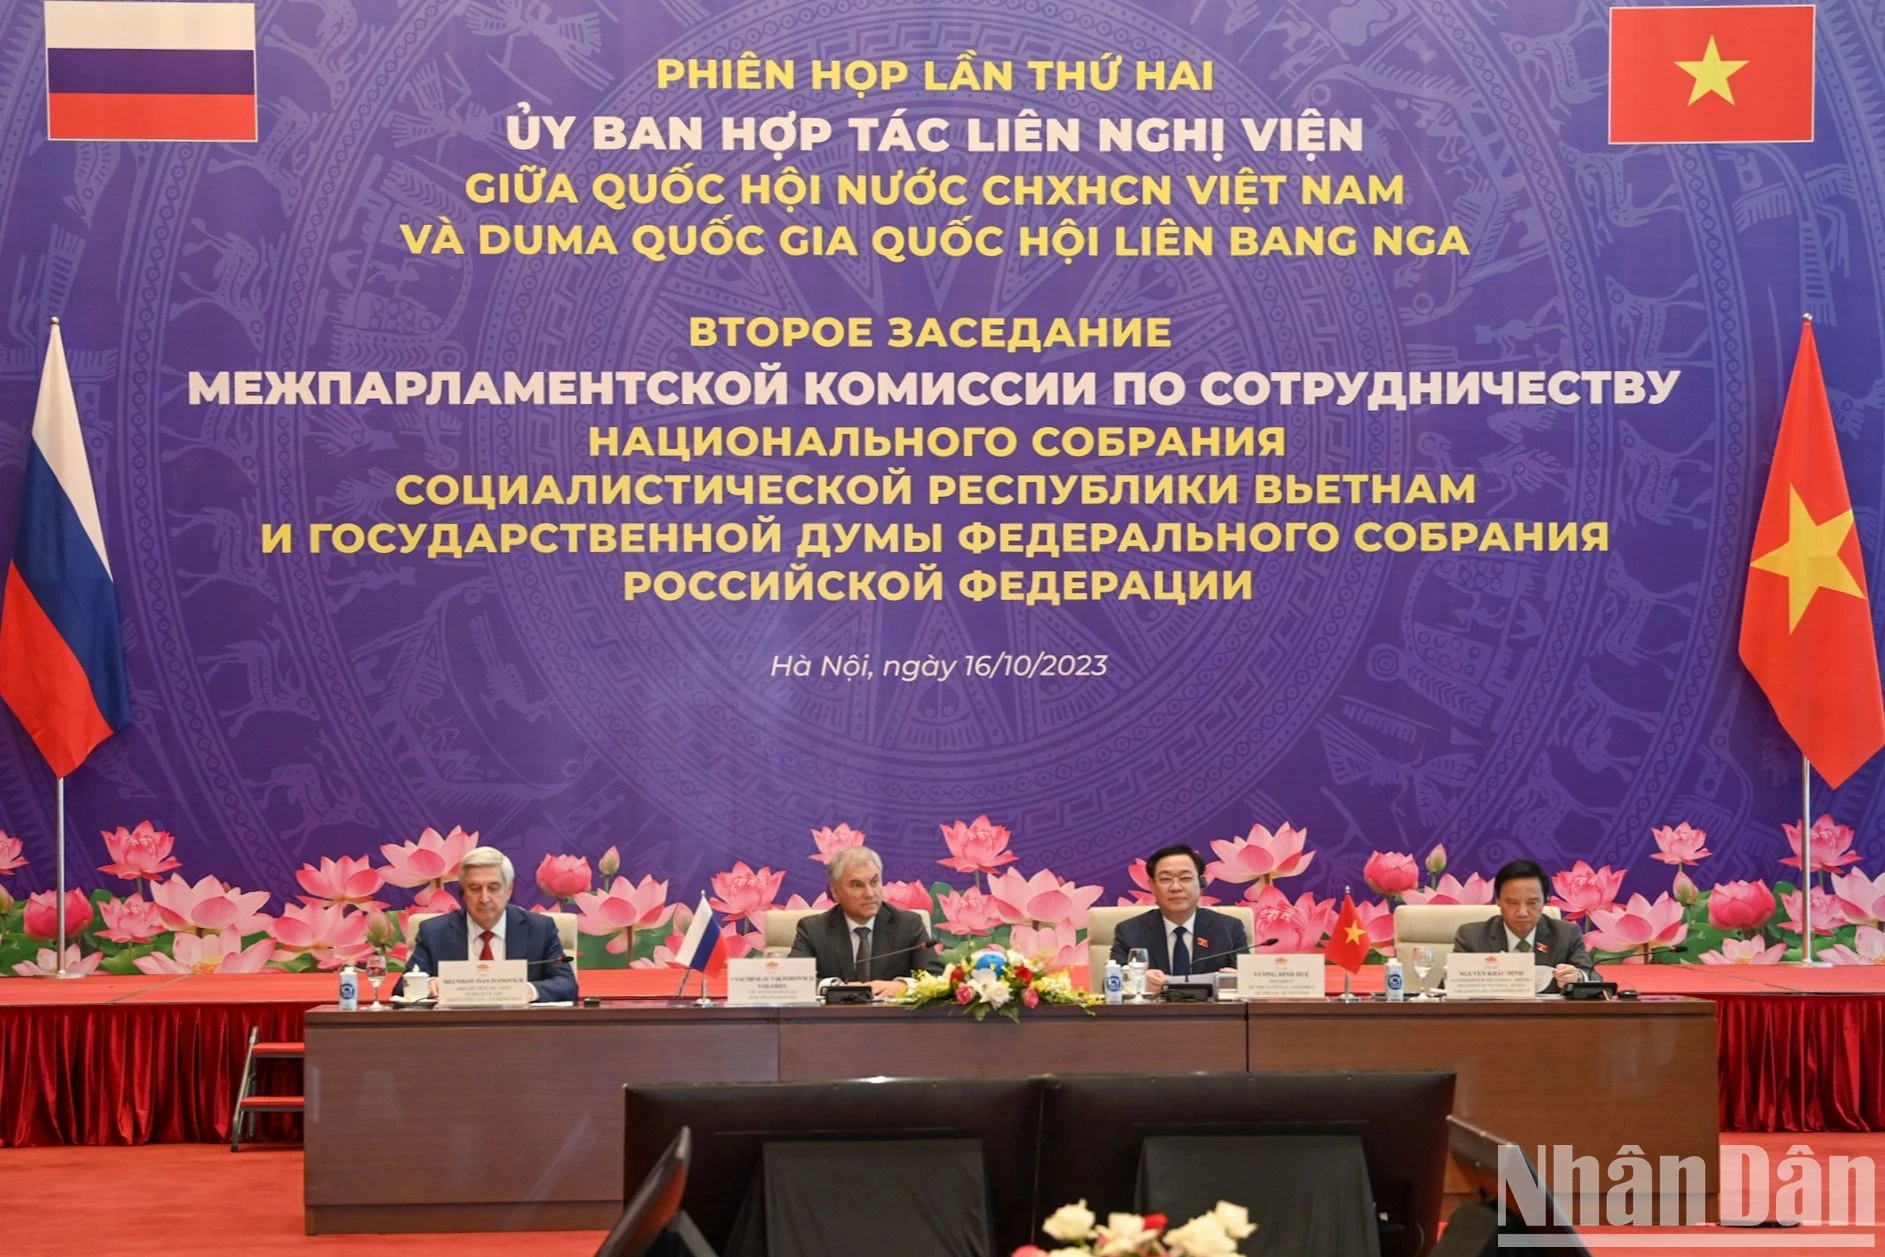 [Ảnh] Khai mạc phiên họp lần thứ hai Ủy ban hợp tác liên nghị viện giữa Quốc hội Việt Nam và Duma Quốc gia Quốc hội Liên bang Nga ảnh 4